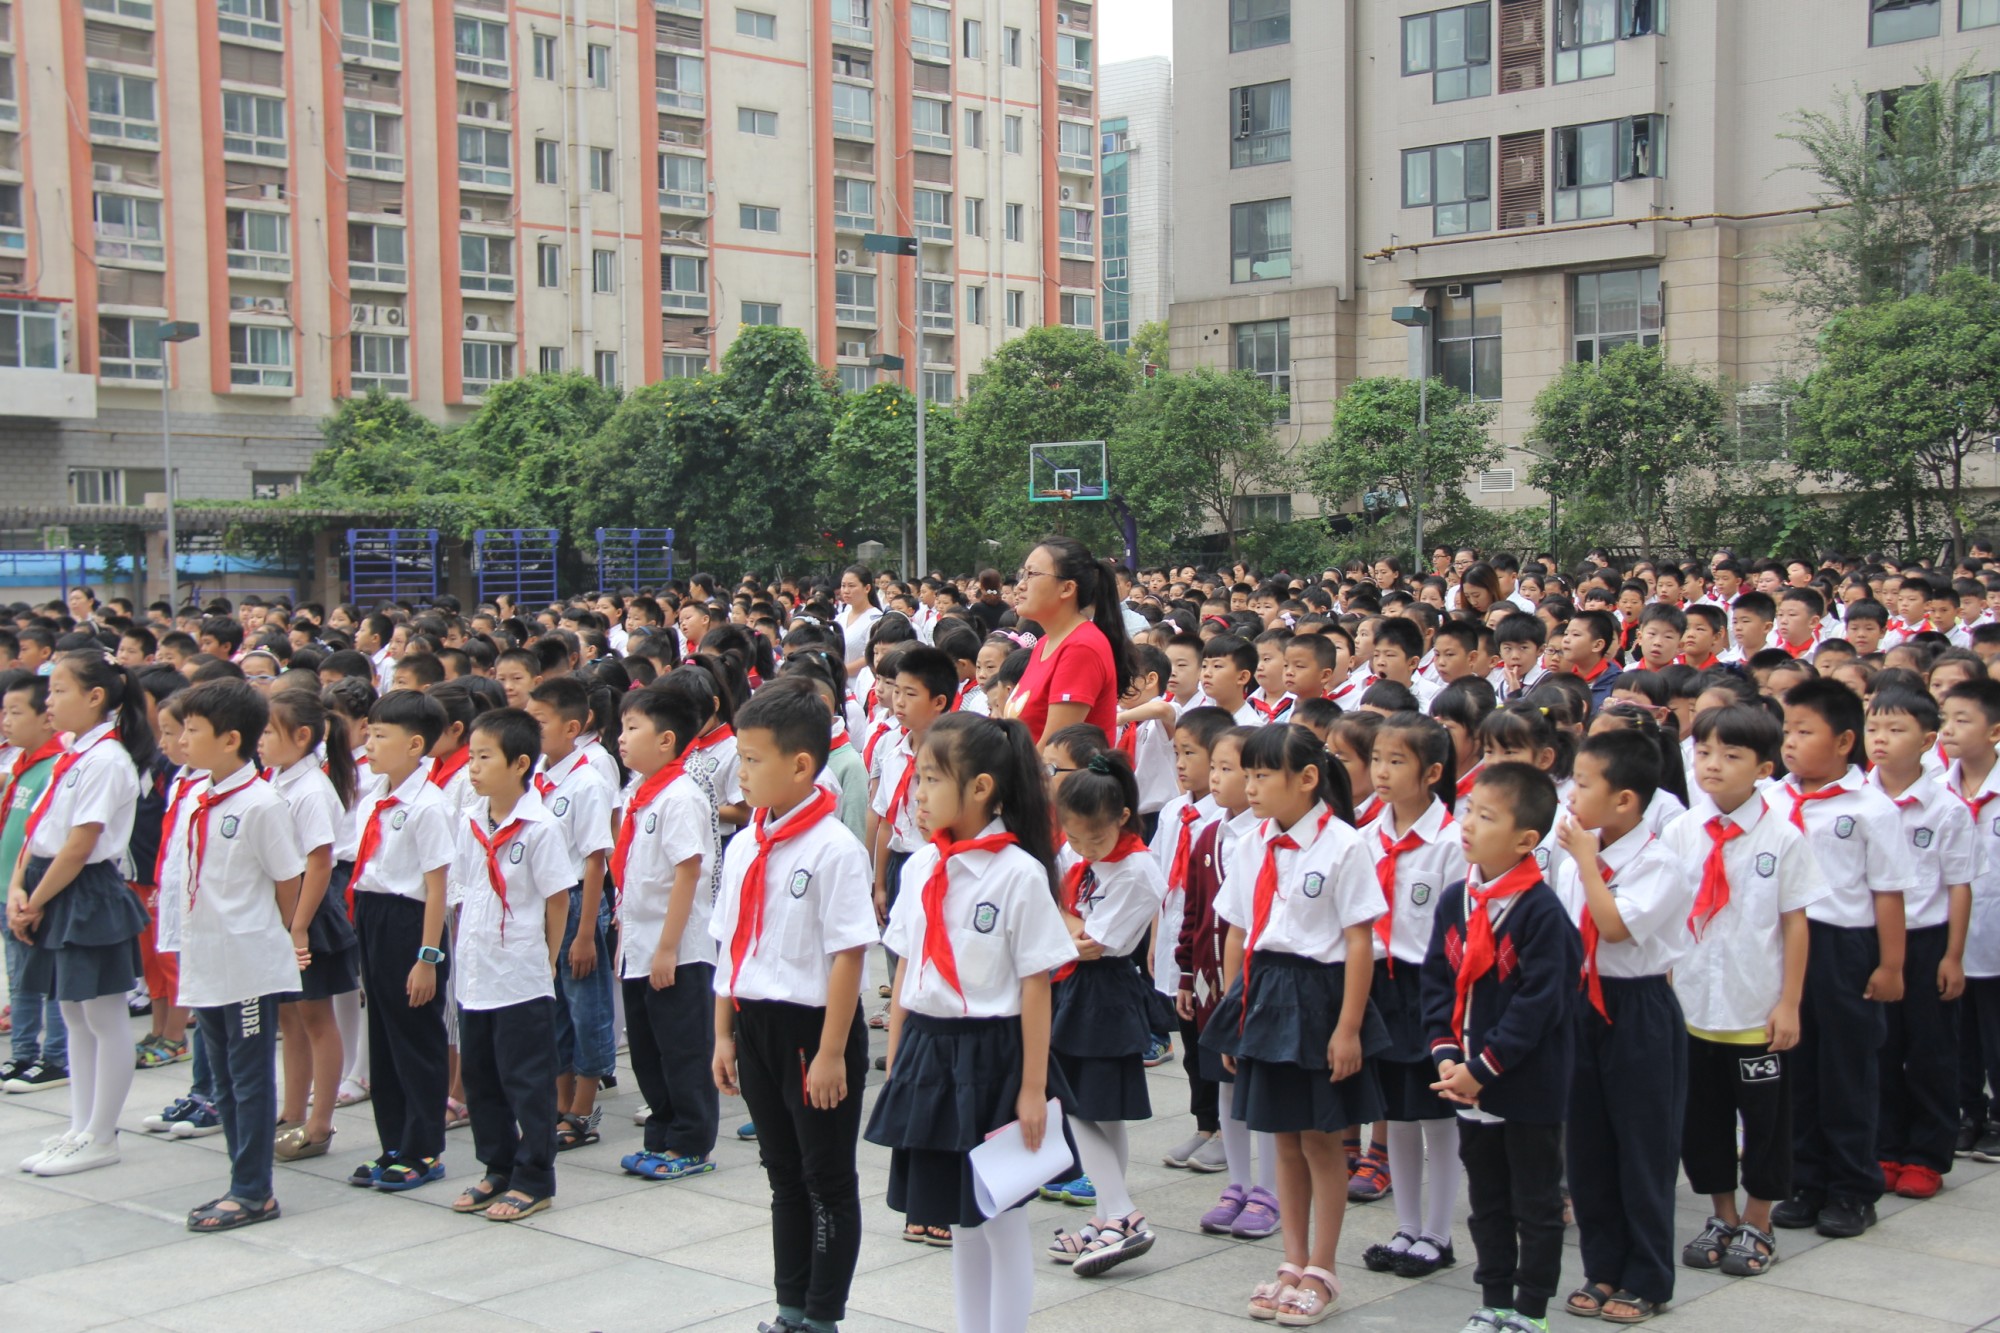 郑州市二七区人和路小学:见证成长 满满的仪式感